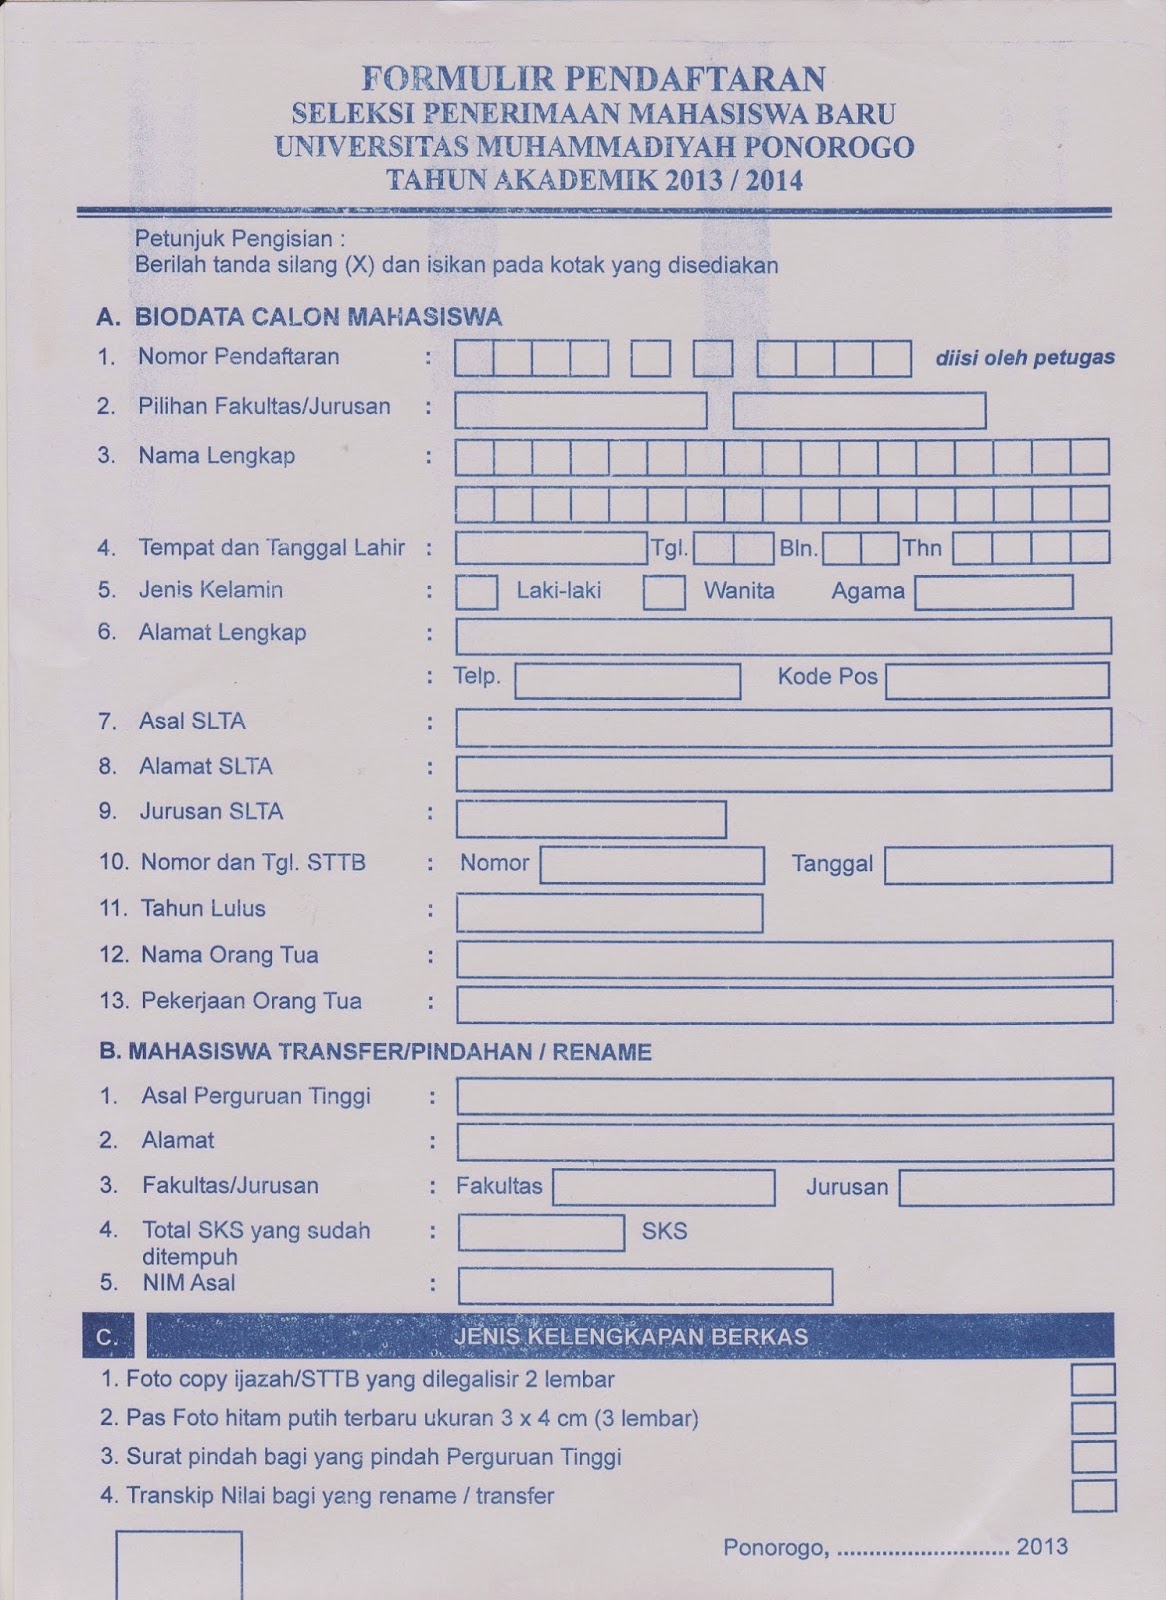 Contoh formulir  pendaftaran anggota baru organisasi 